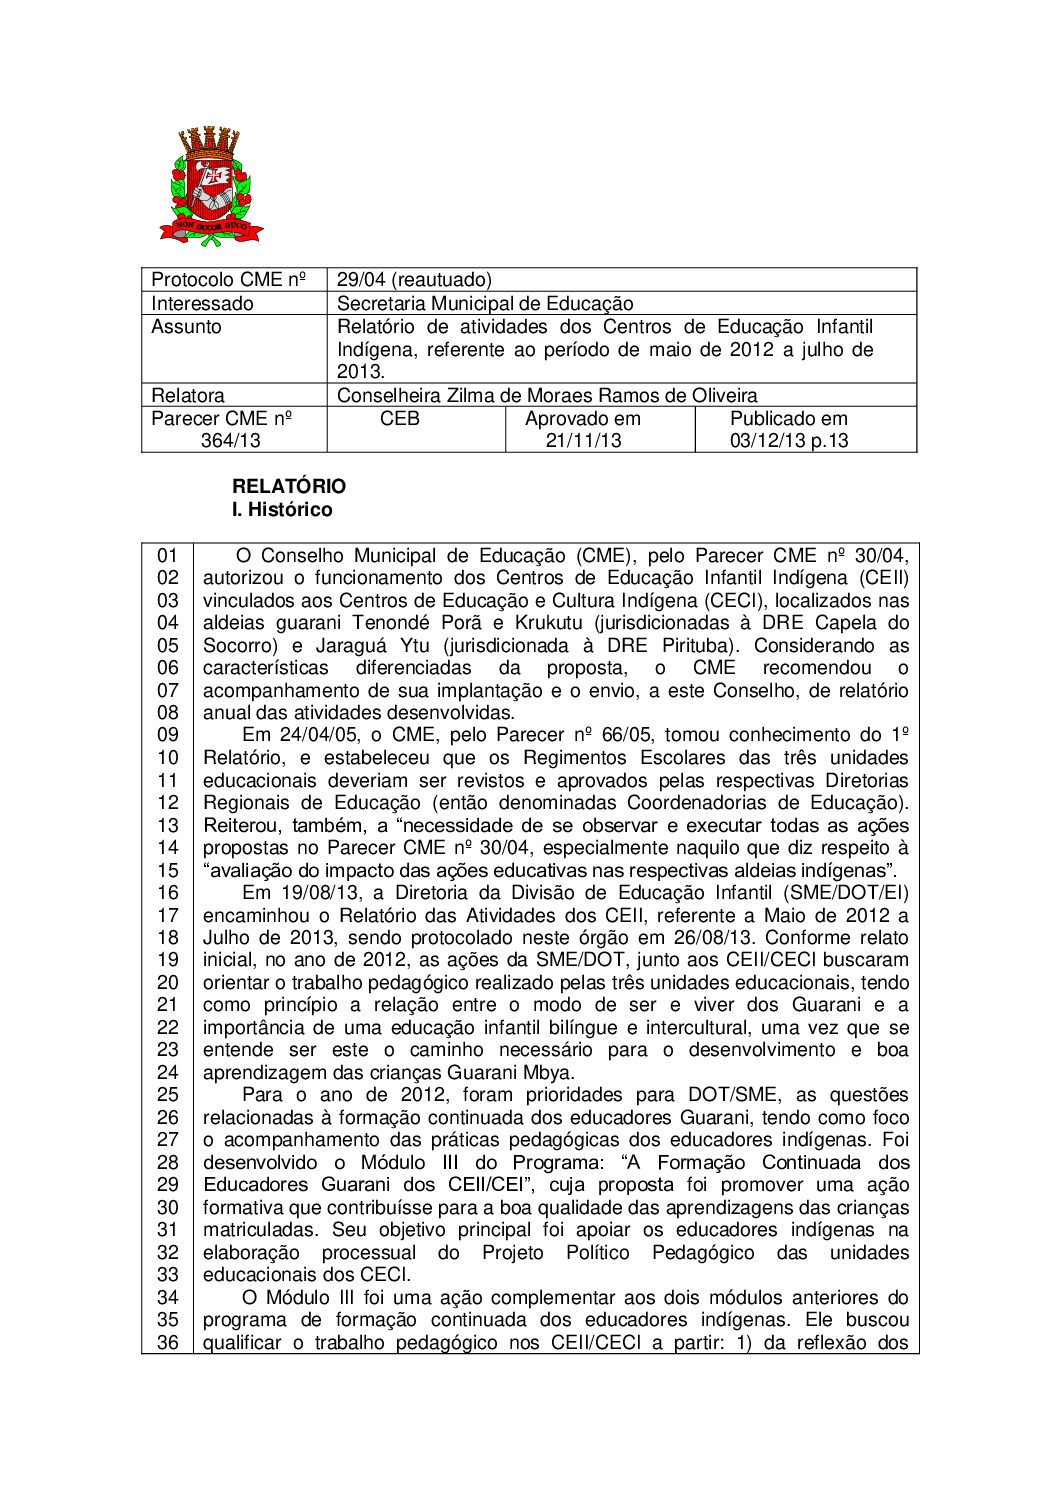 Parecer CME nº 364/2013 - Relatório de atividades dos Centros de Educação Infantil Indígena, referente ao período de maio de 2012 a julho de 2013